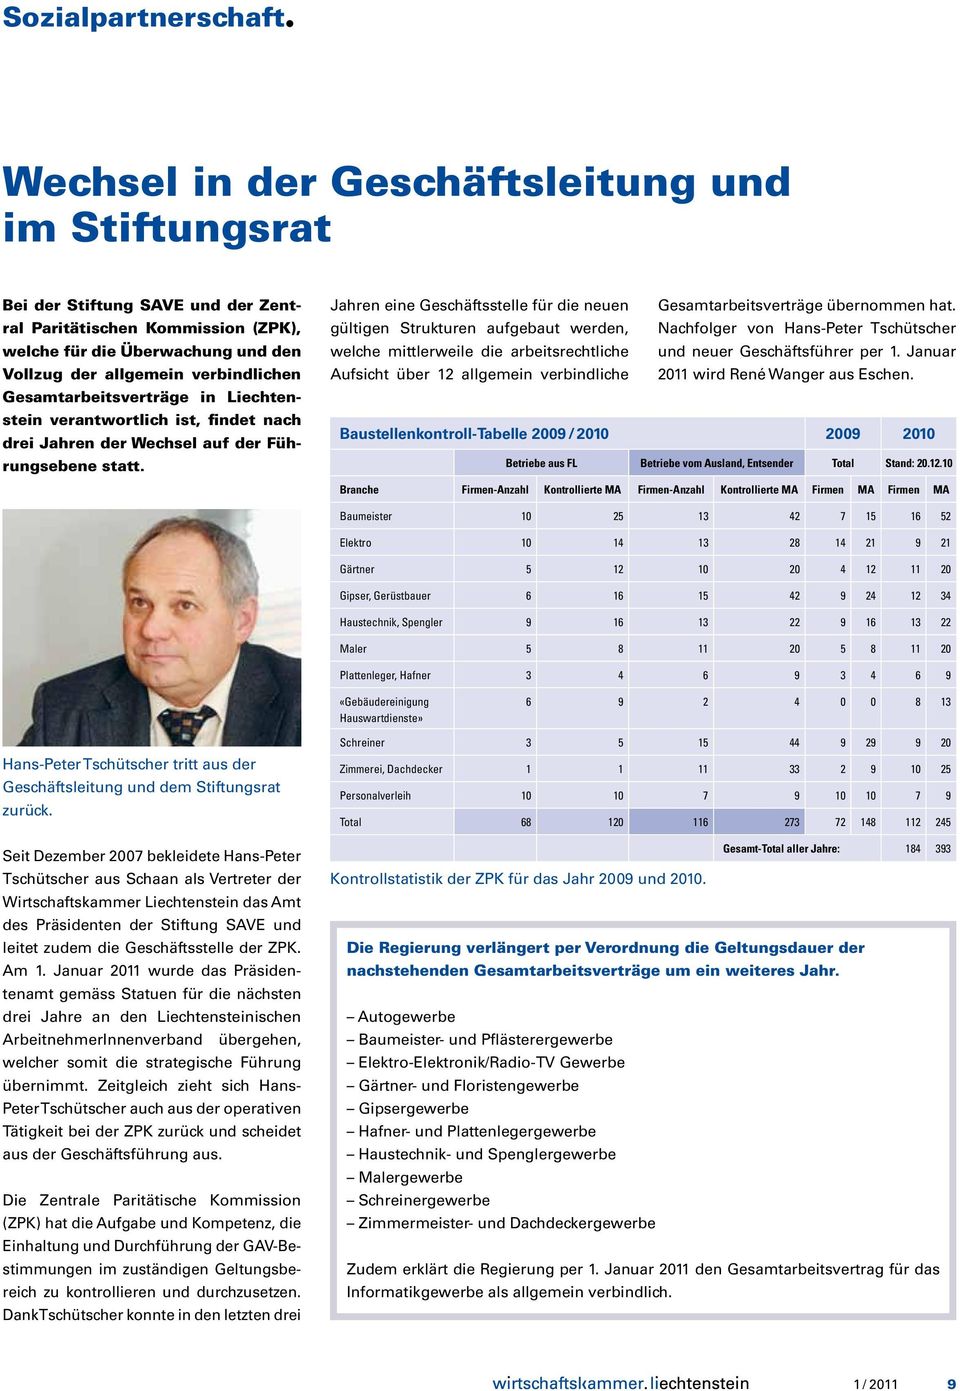 Gesamtarbeitsverträge in Liechtenstein verantwortlich ist, findet nach drei Jahren der Wechsel auf der Führungsebene statt.